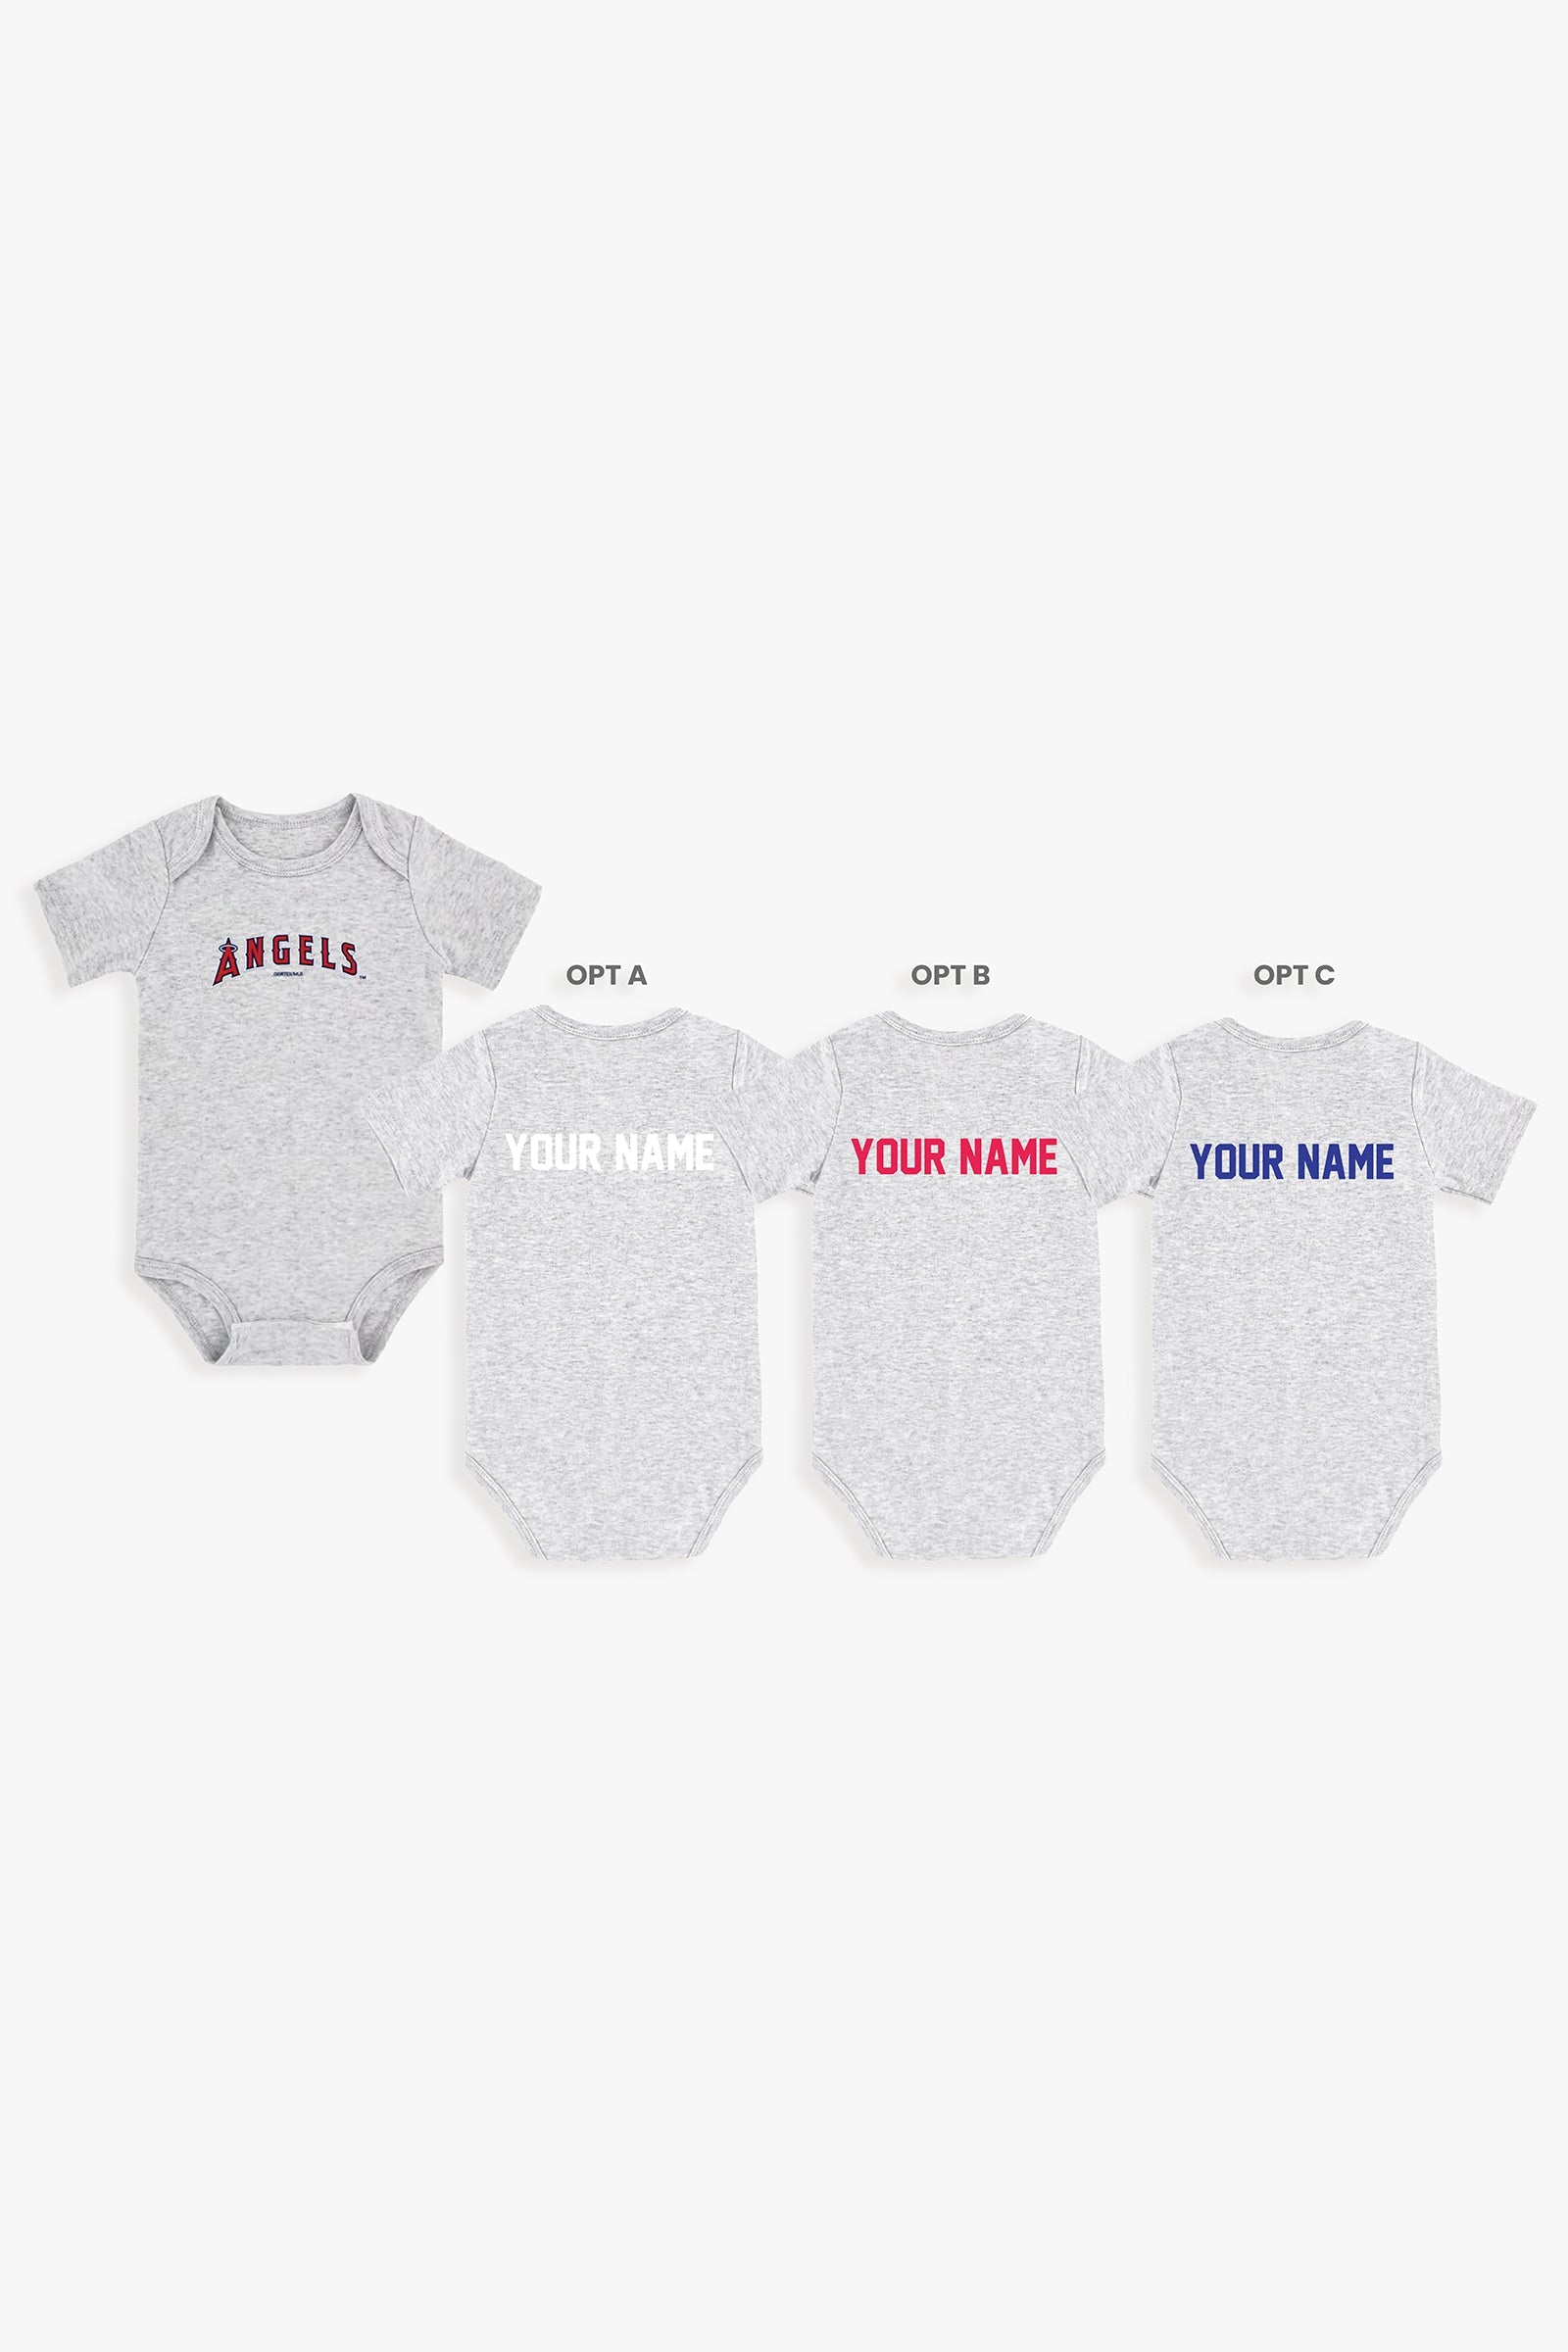 Gertex Customizable MLB Baby Onesie Bodysuit in Grey (9-12 Months)